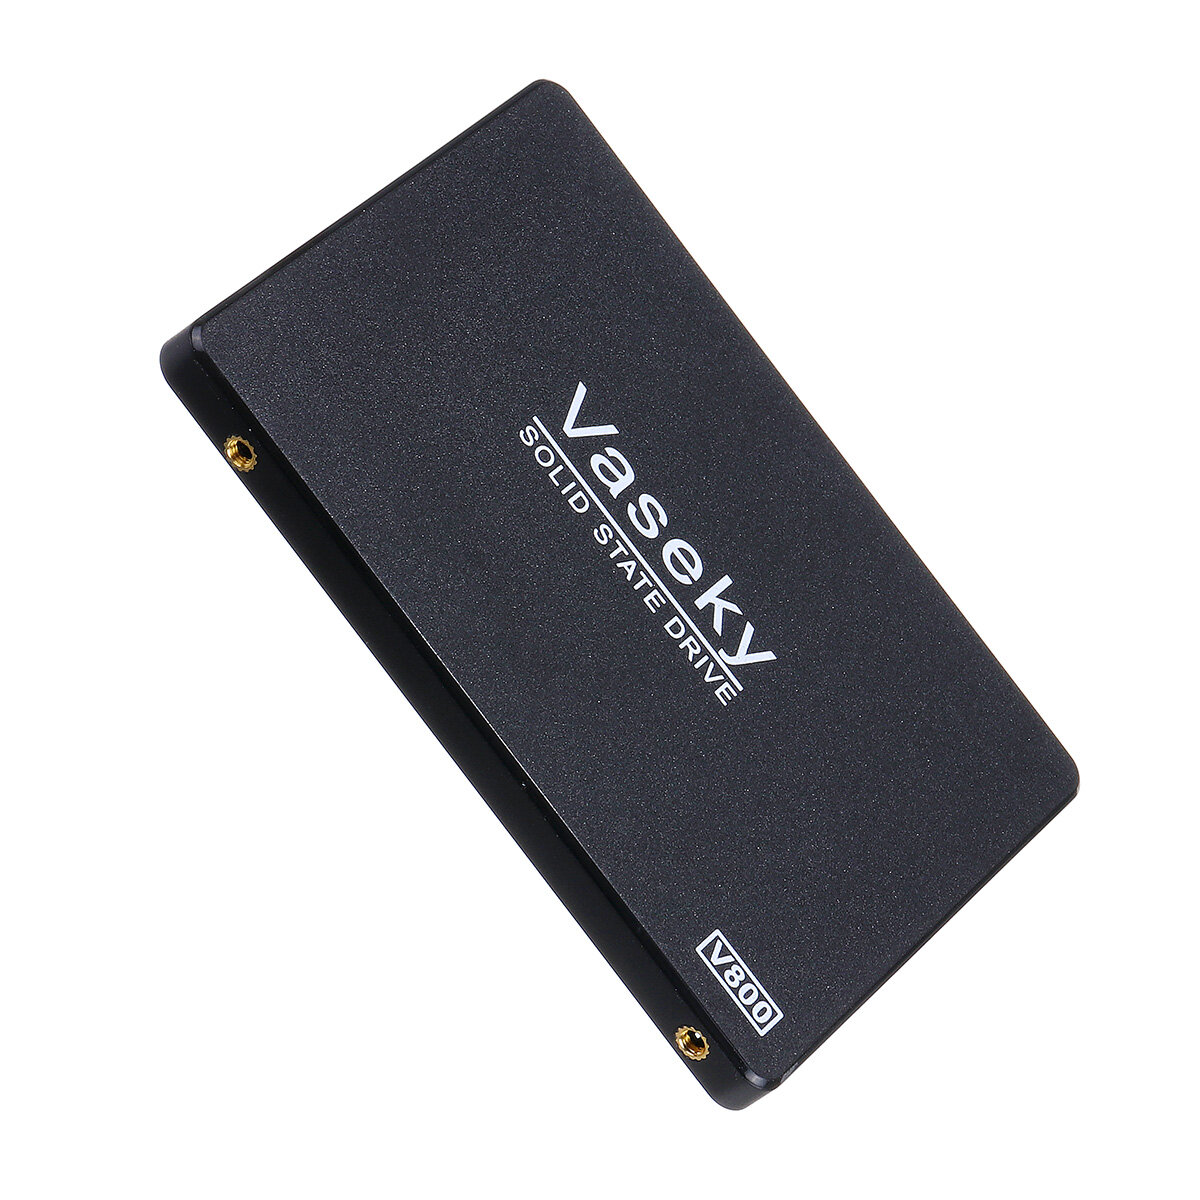 ラップトップ用Vaseky 2.5インチSATA SSD高速3モードハードドライブ